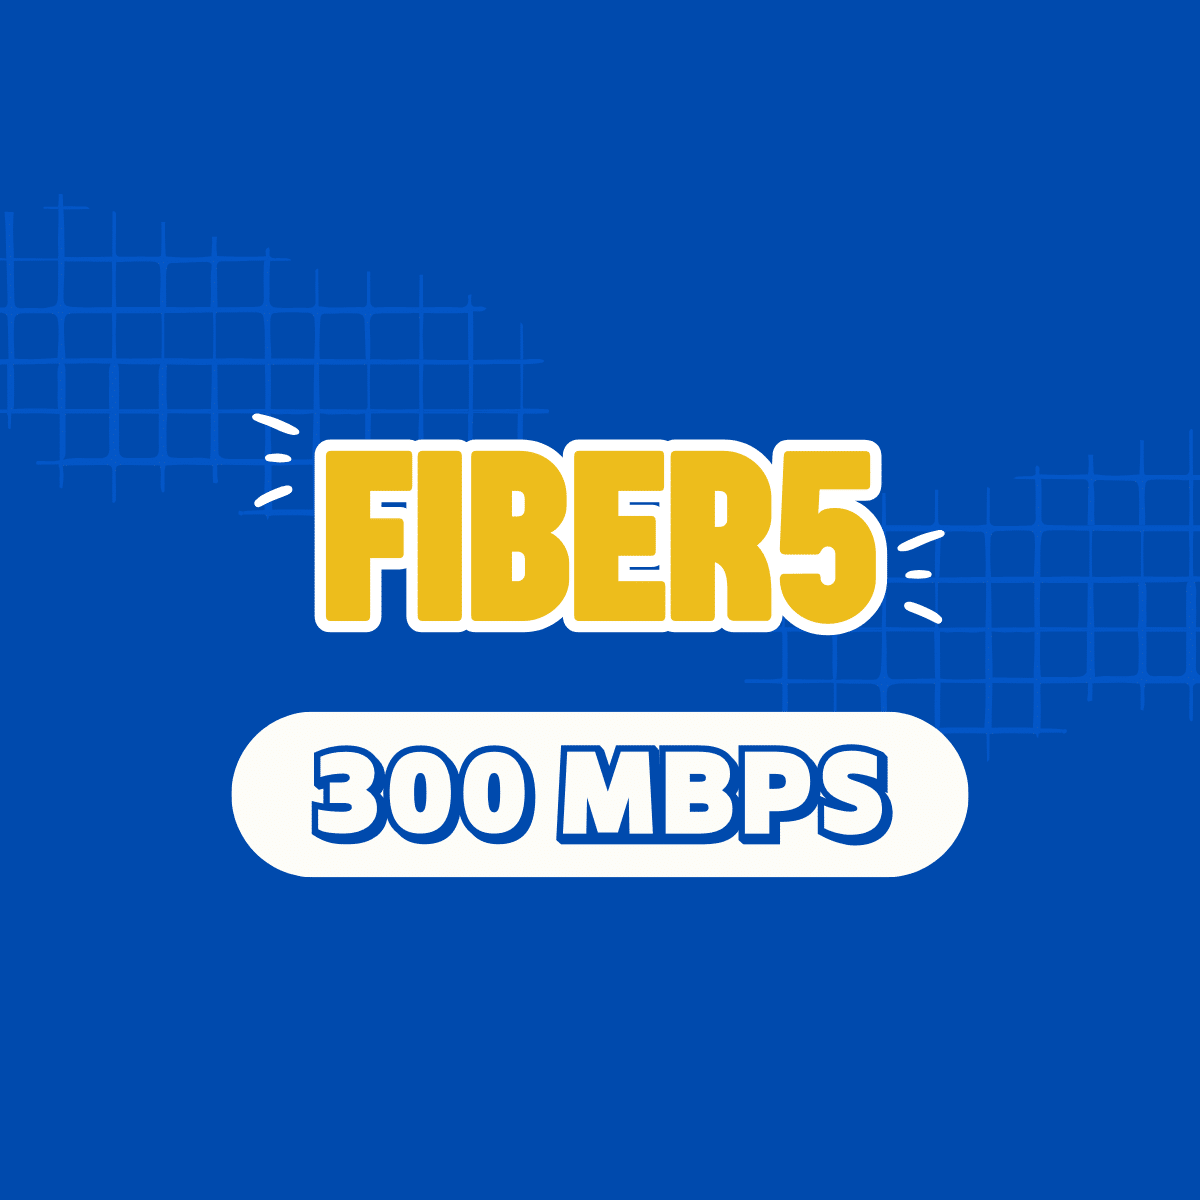 Fiber 5, fiber5